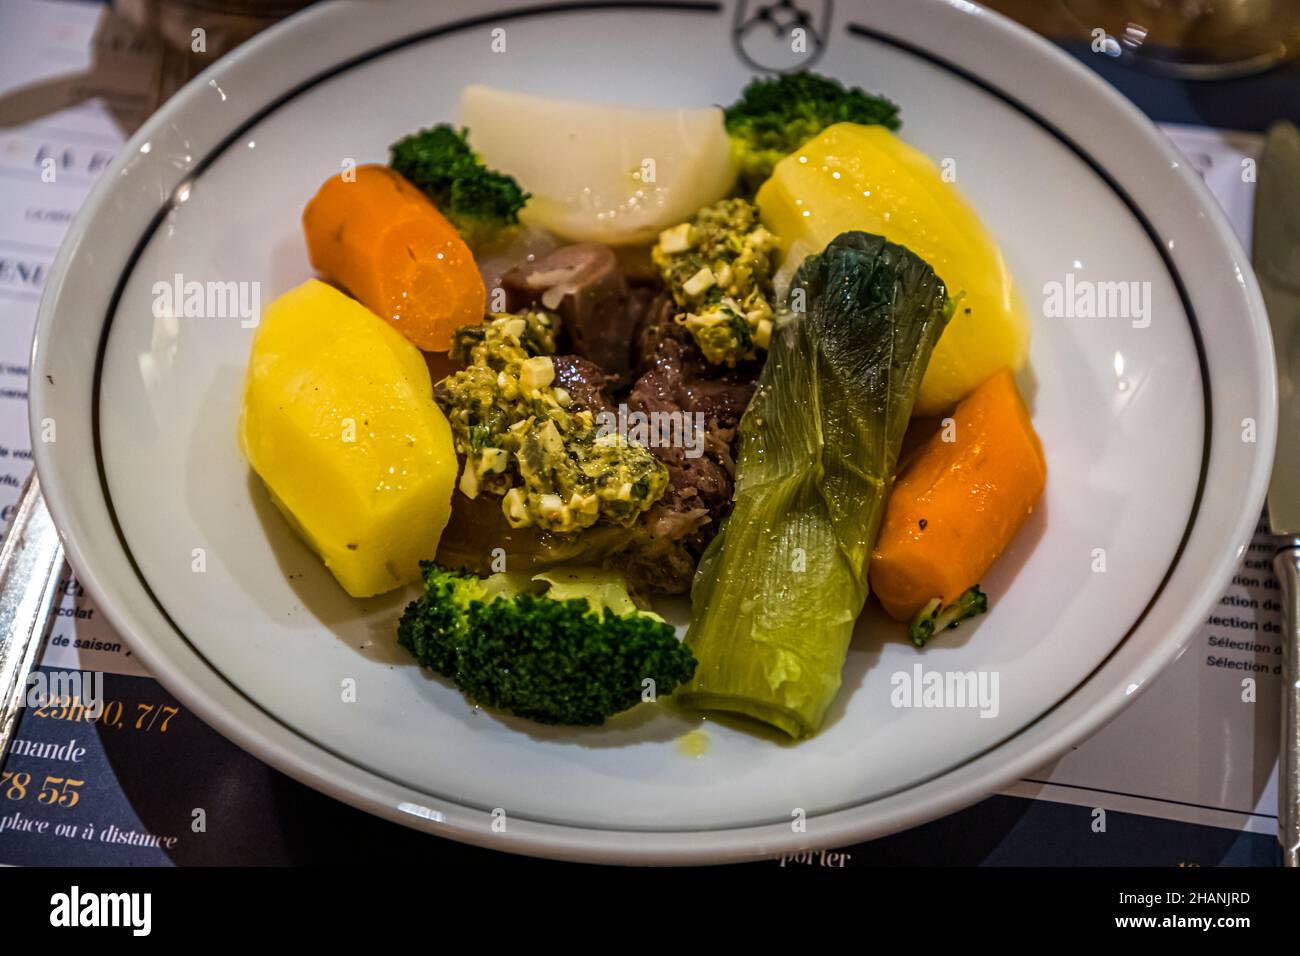 Tête de veau (Calf's head) is one of the recommendations in the restaurant 'Les Trois Garçons'  Draguignan, France Stock Photo